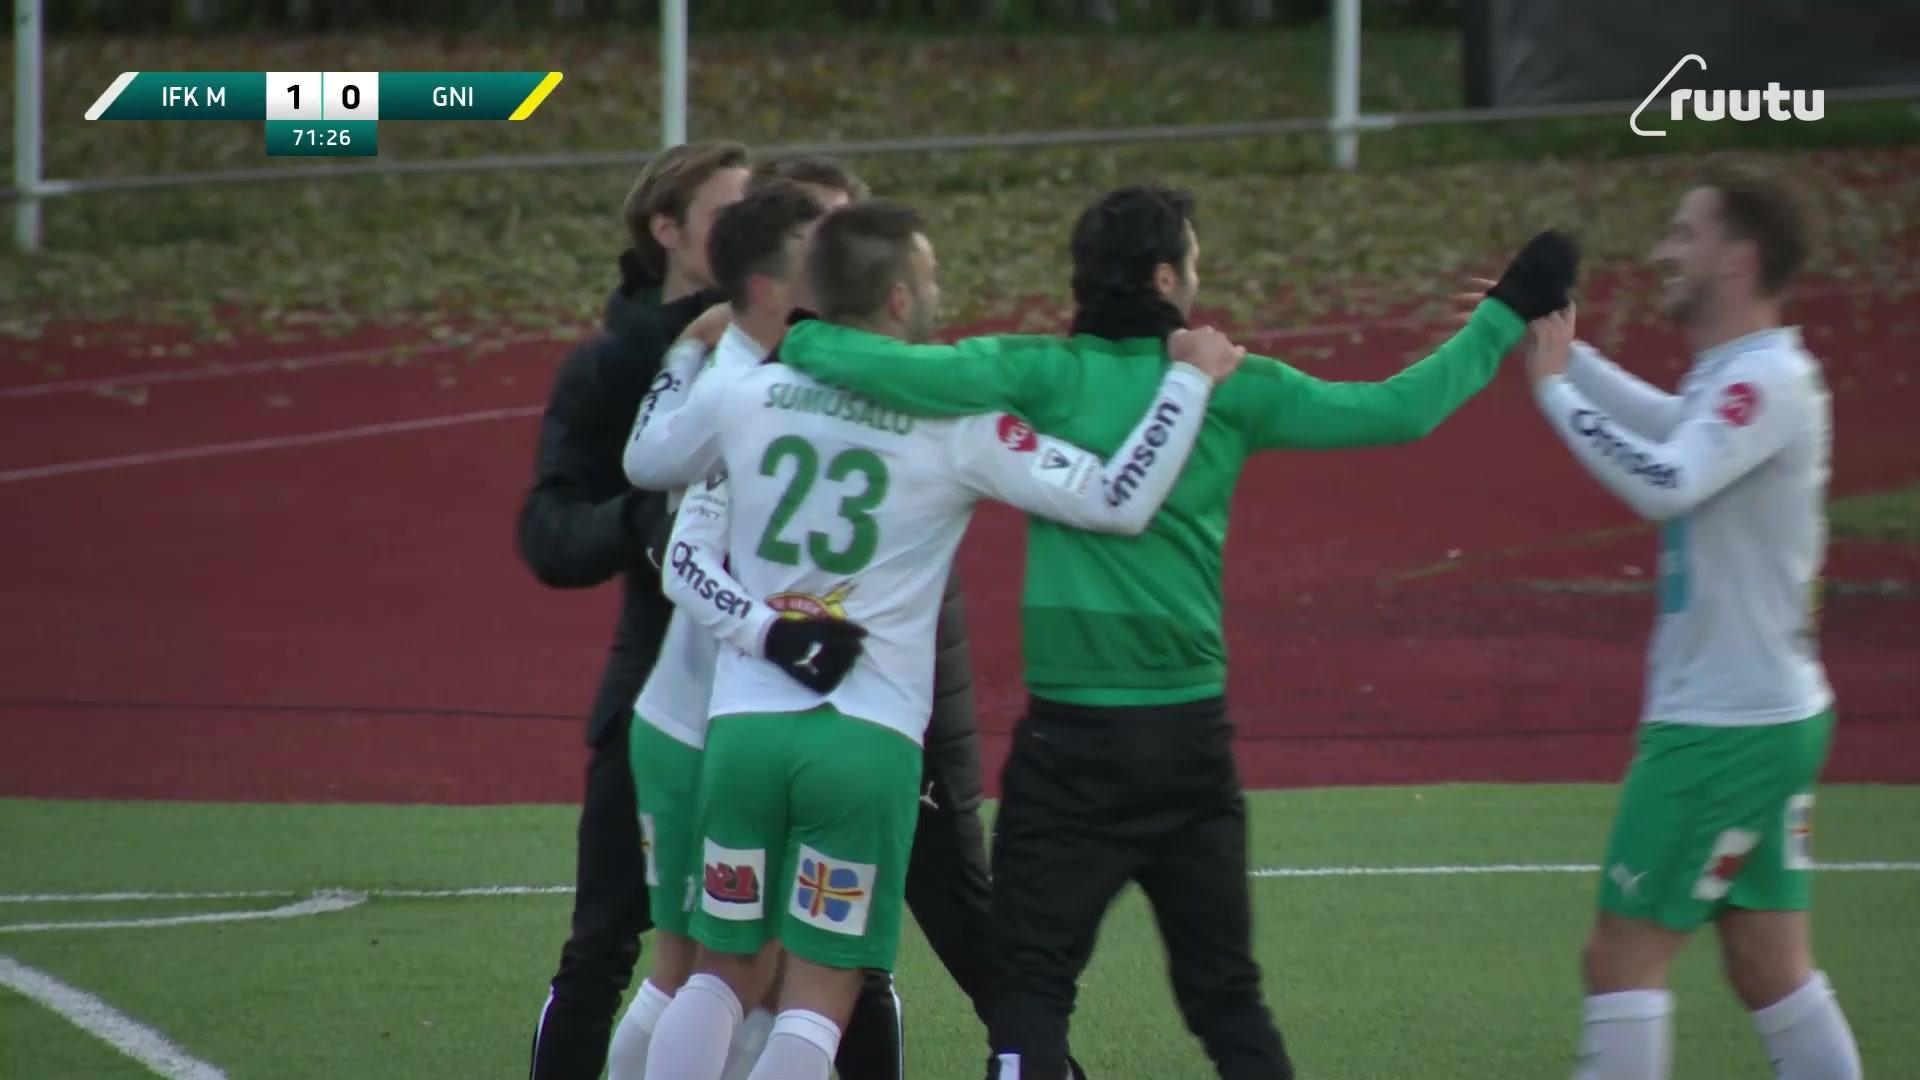 "Mikä minuutti!" - IFK Mariehamn maalaa tolpan jälkeisestä vastahyökkäyksestä! 